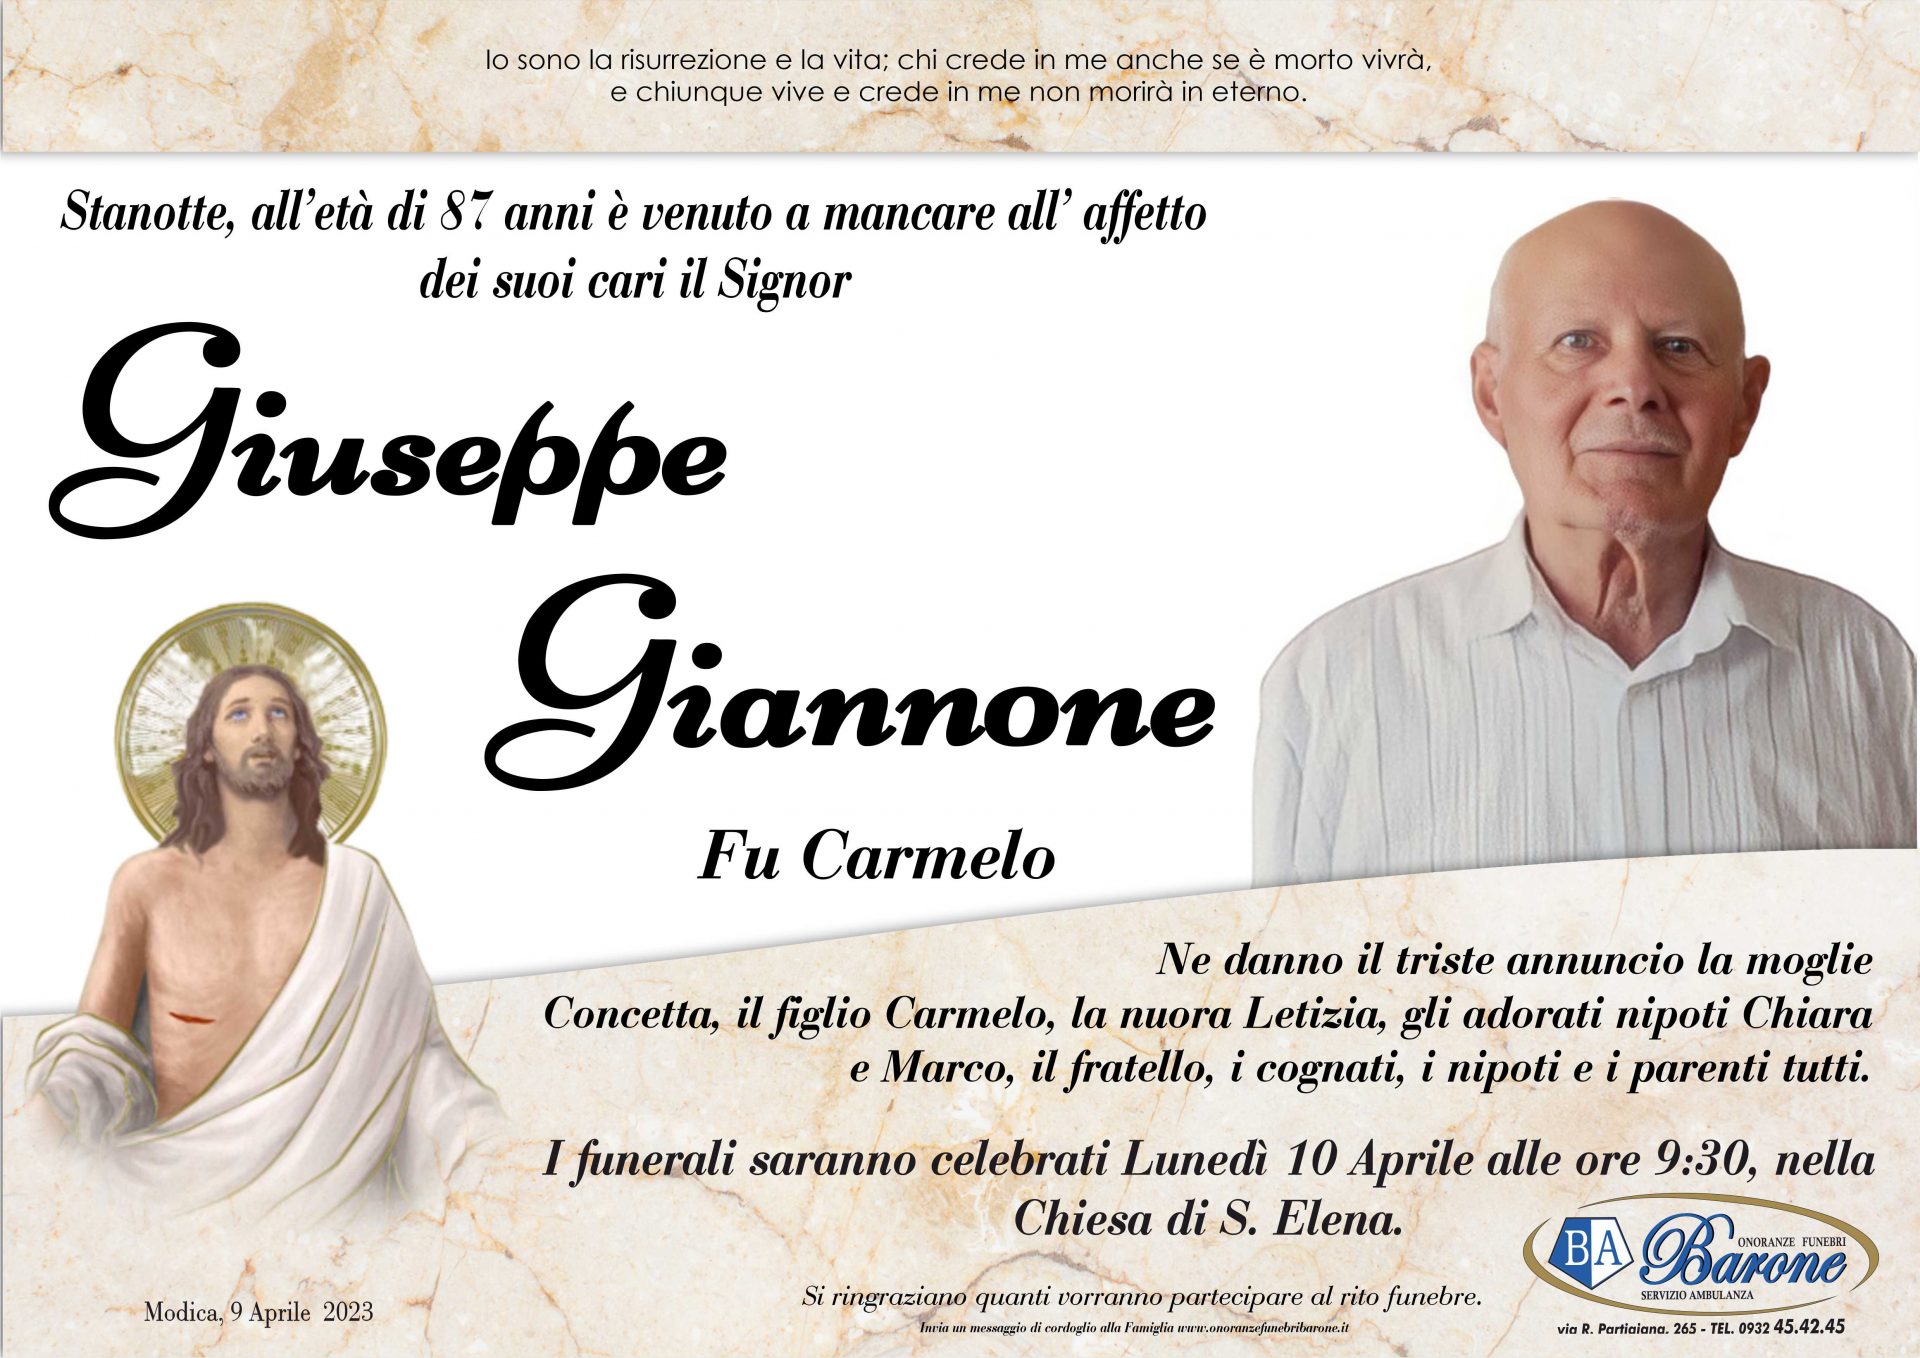 Giuseppe Giannone